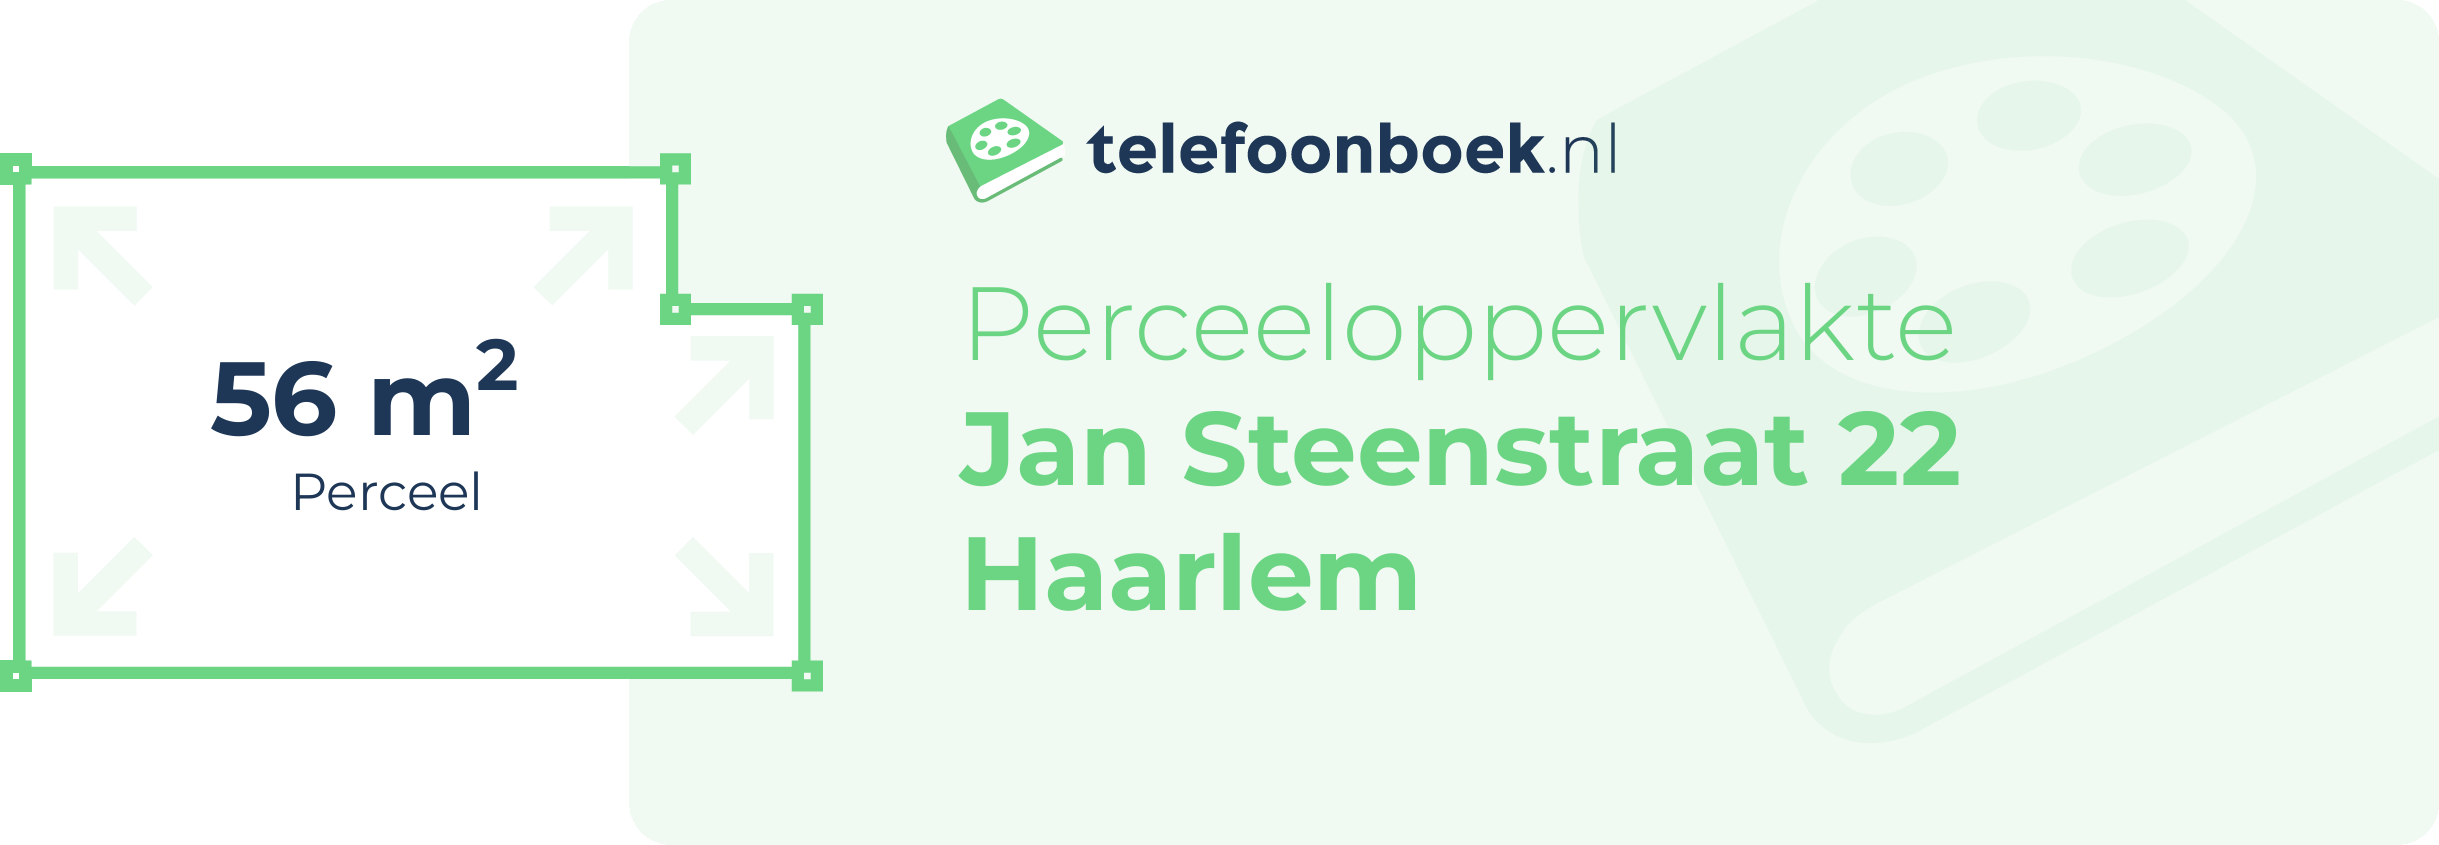 Perceeloppervlakte Jan Steenstraat 22 Haarlem